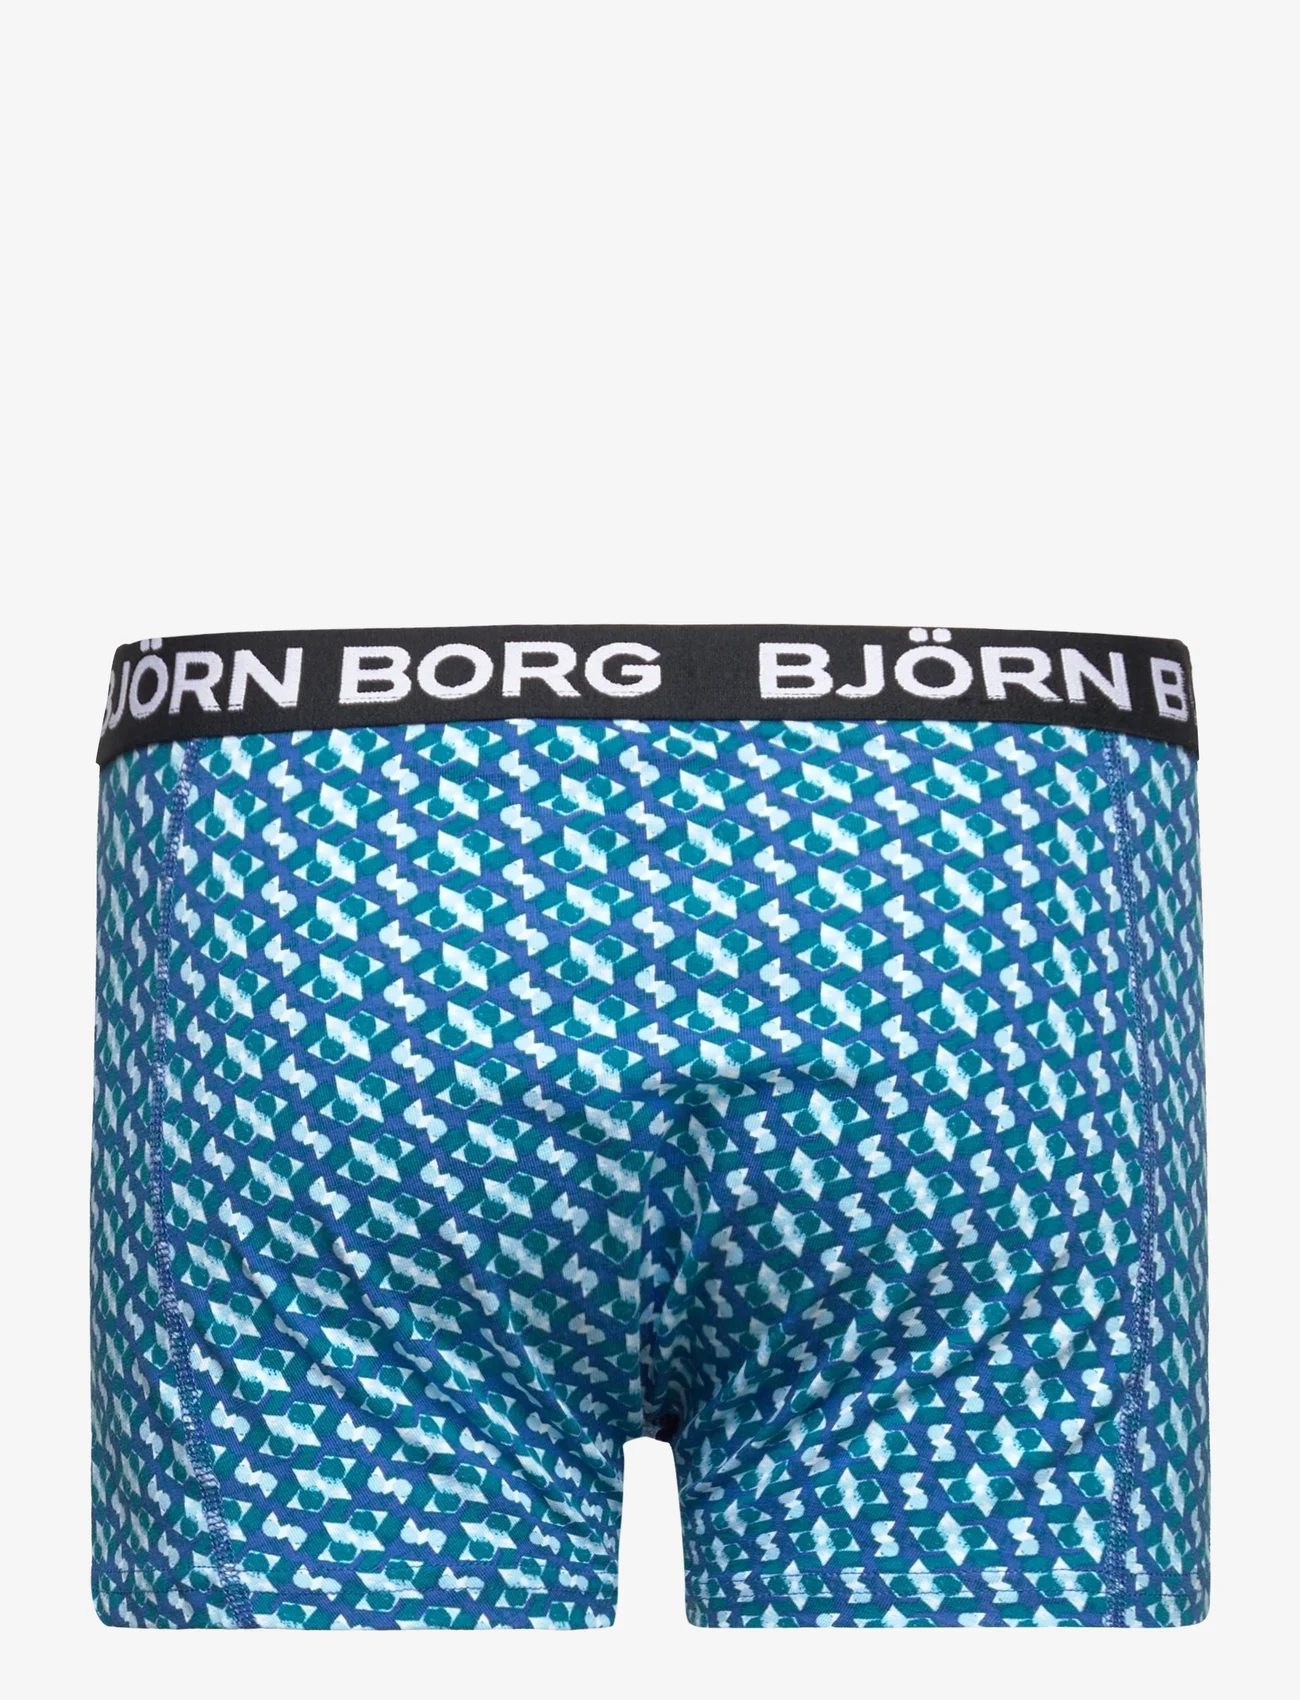 Björn Borg - CORE BOXER 3p - underbukser - multipack 4 - 1